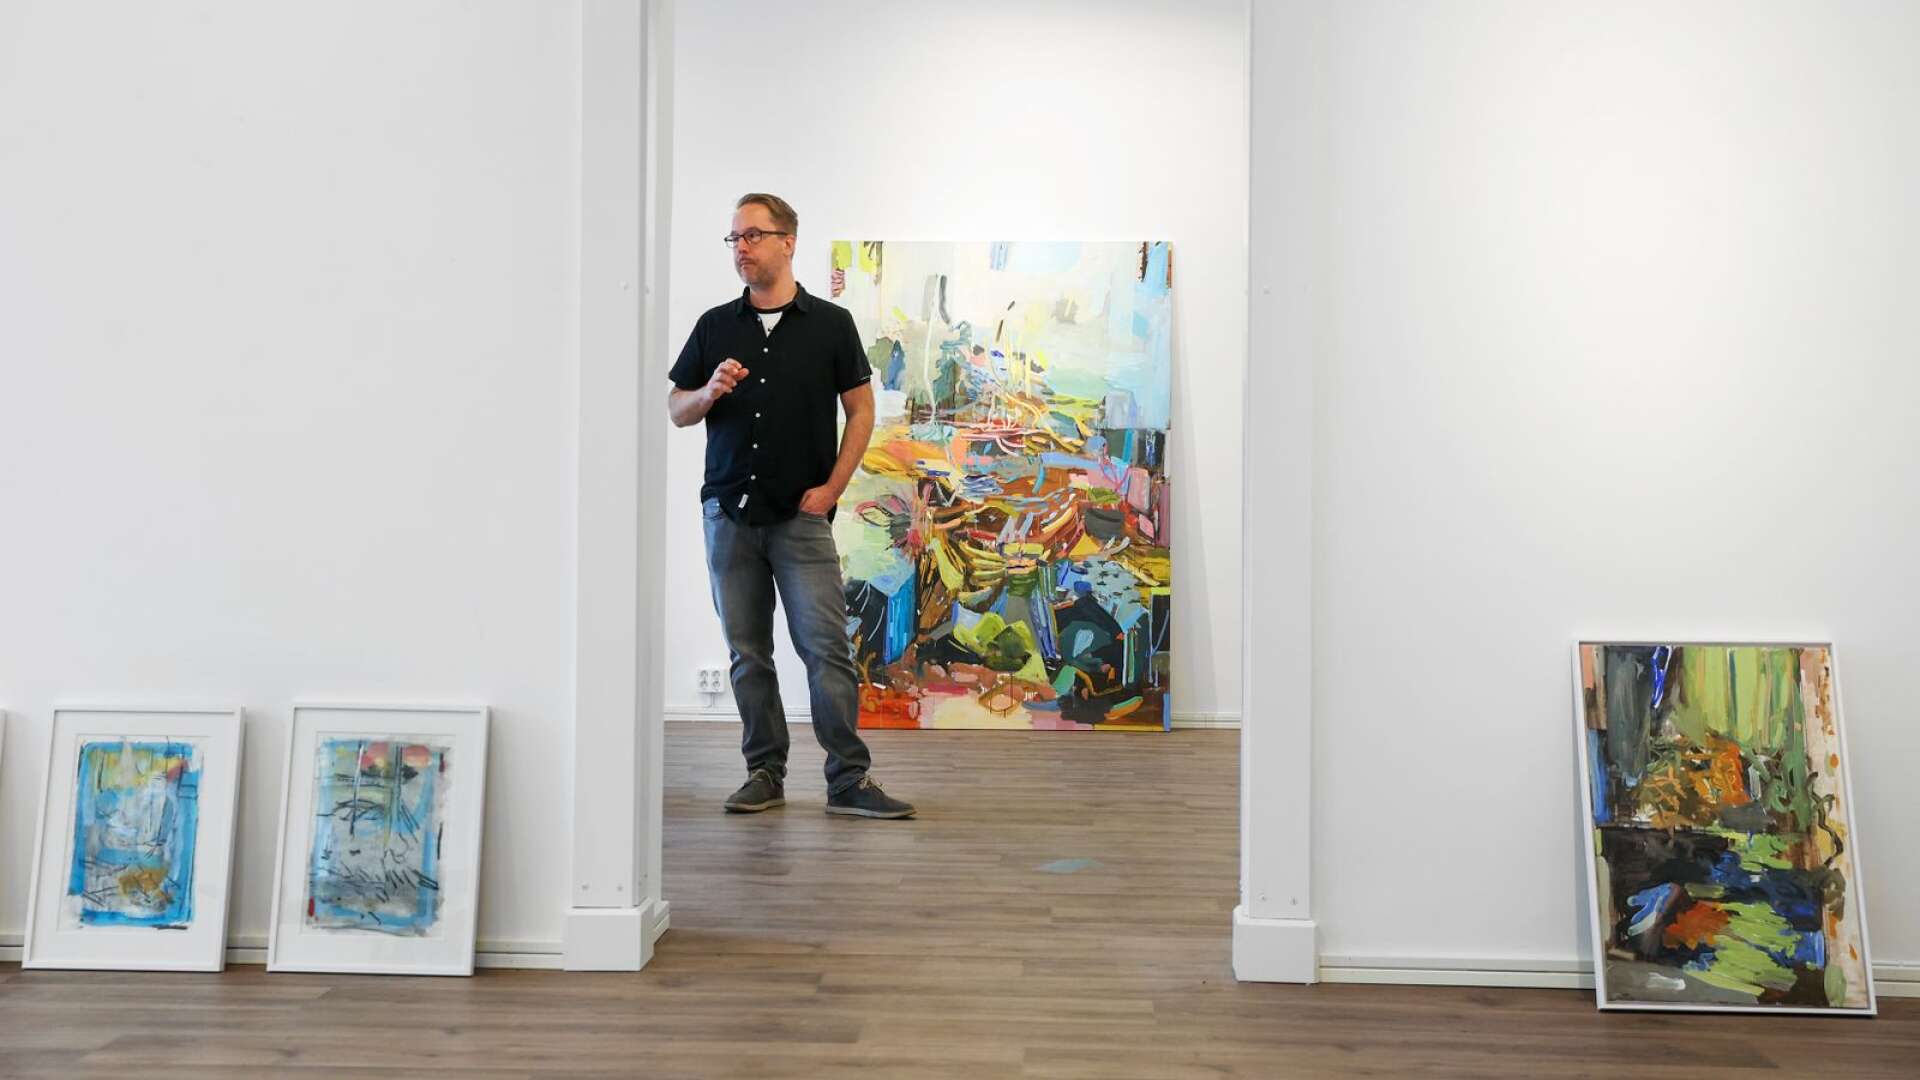 Karlstadskonstnären David Tedfeldt fyller galleriet med fritt tolkad natur